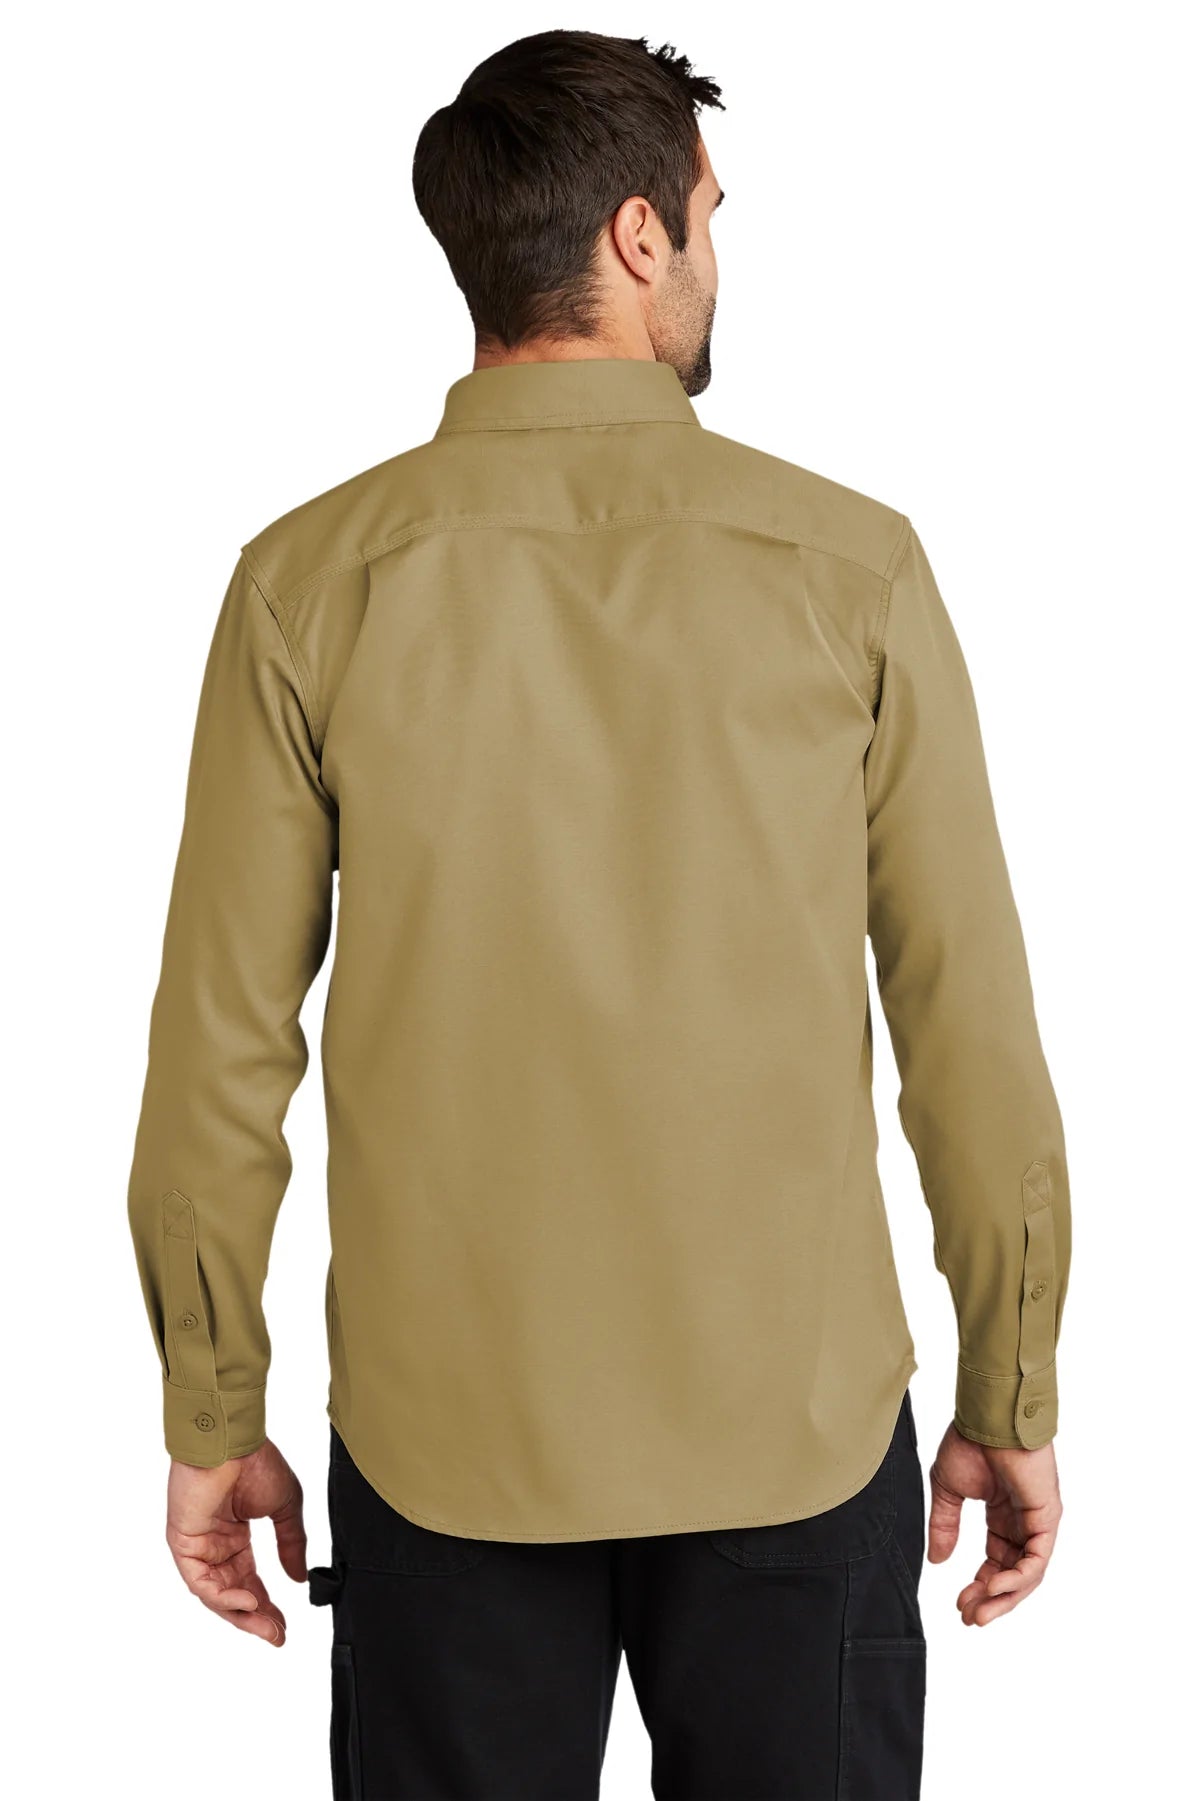 Carhartt Rugged Series Long Sleeve Custom Shirts, Dark Khaki